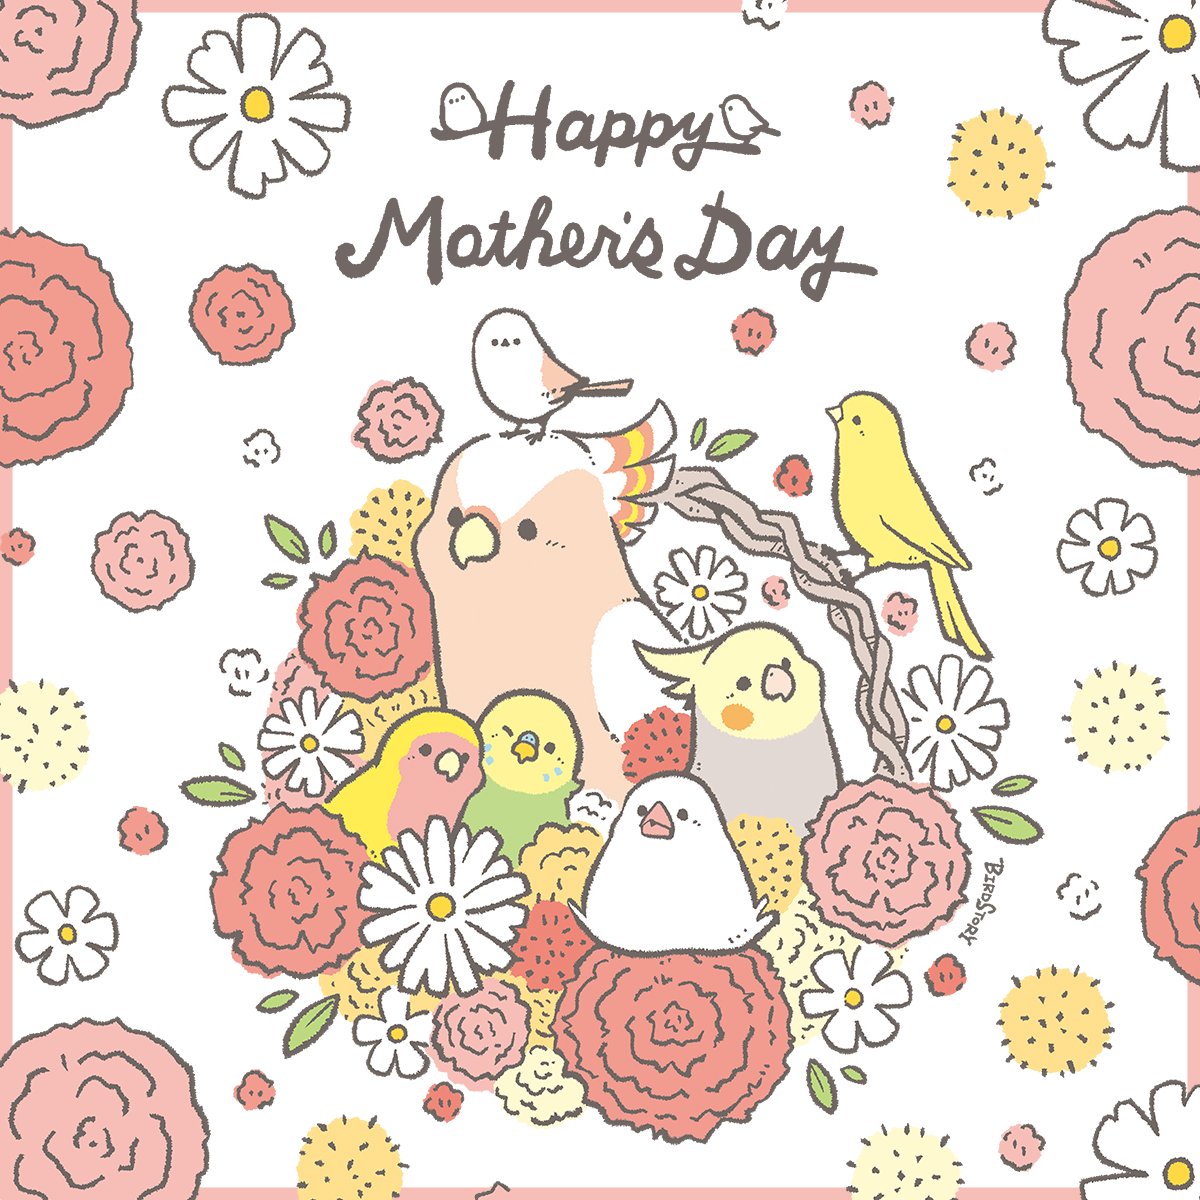 おはようございます。
本日は5月12日、母の日とのことです🐣
よきいち日になりますように💐
#BIRDSTORY 
#母の日 